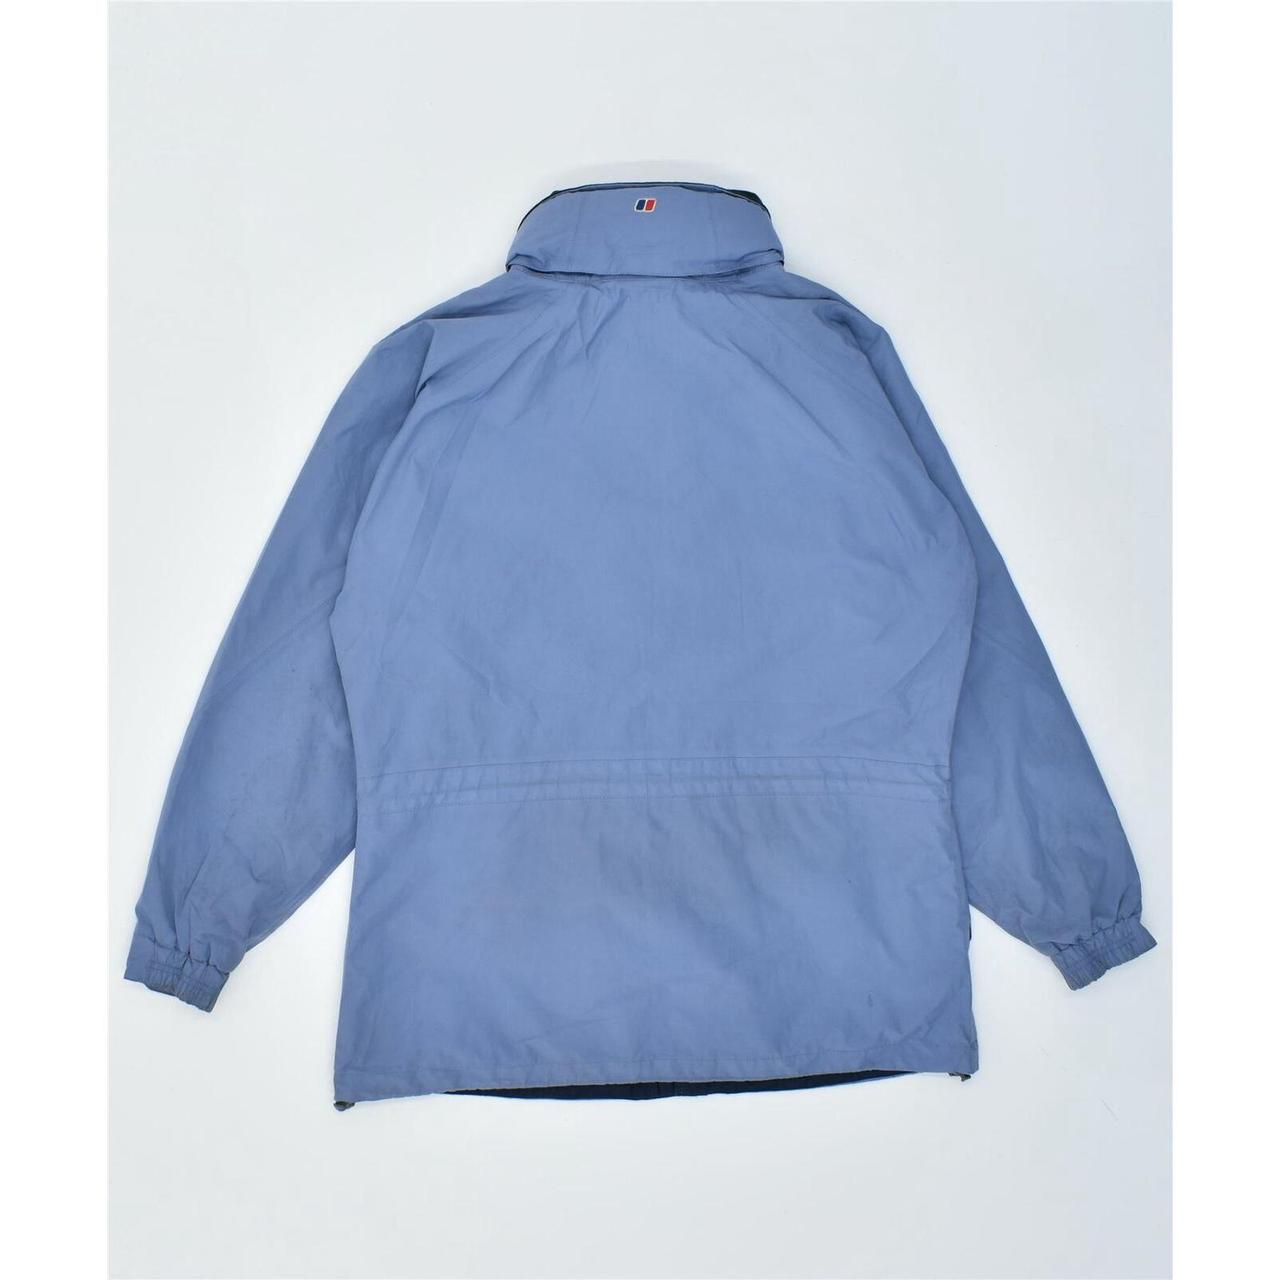 Product Image 2 - BERGHAUS Womens Windbreaker Jacket UK